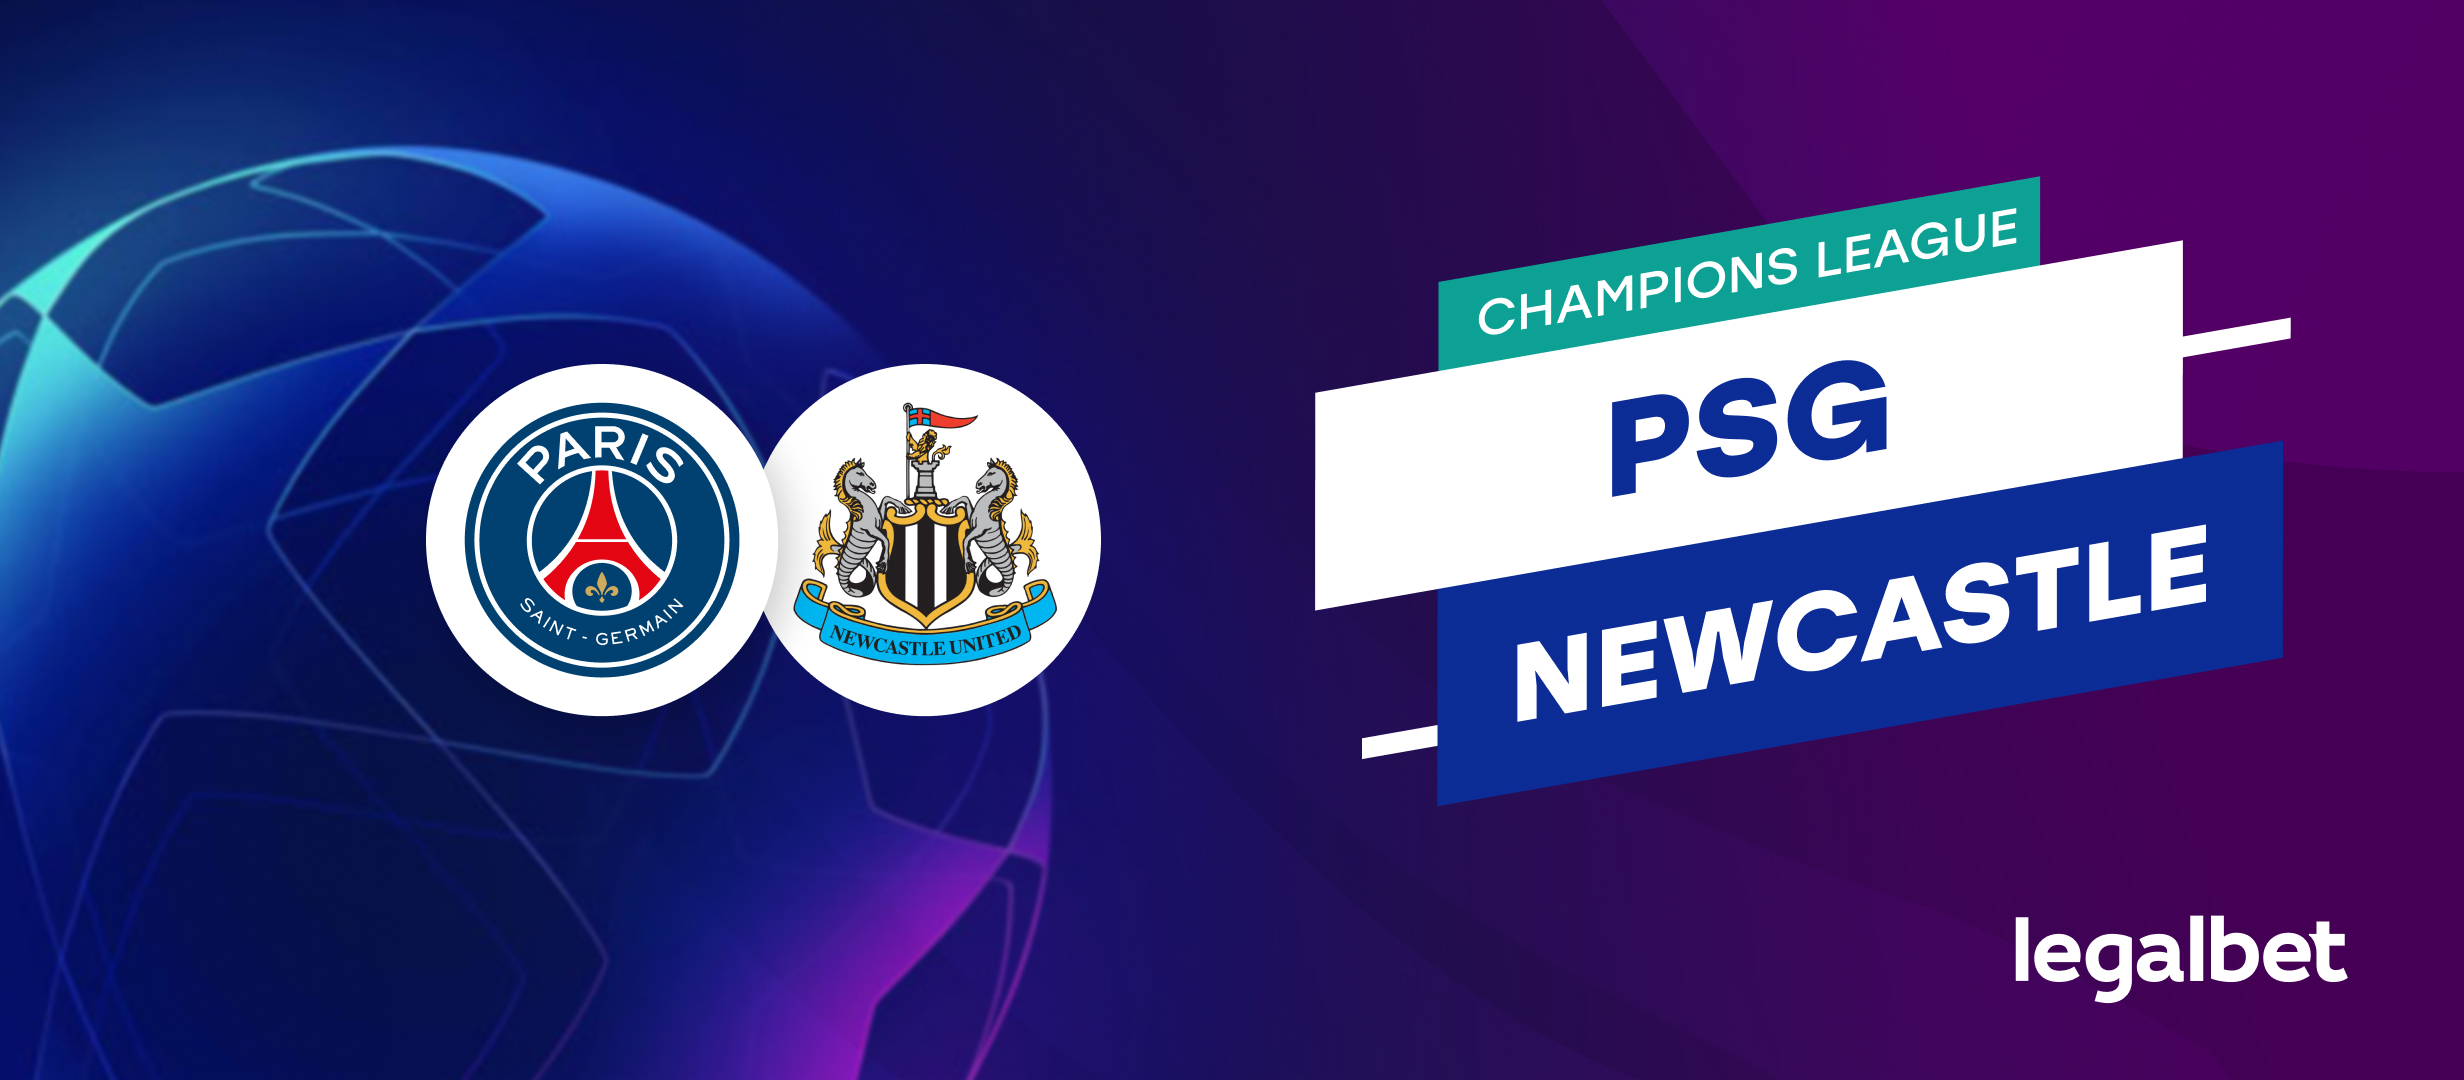 PSG - Newcastle - ponturi la pariuri Champions League